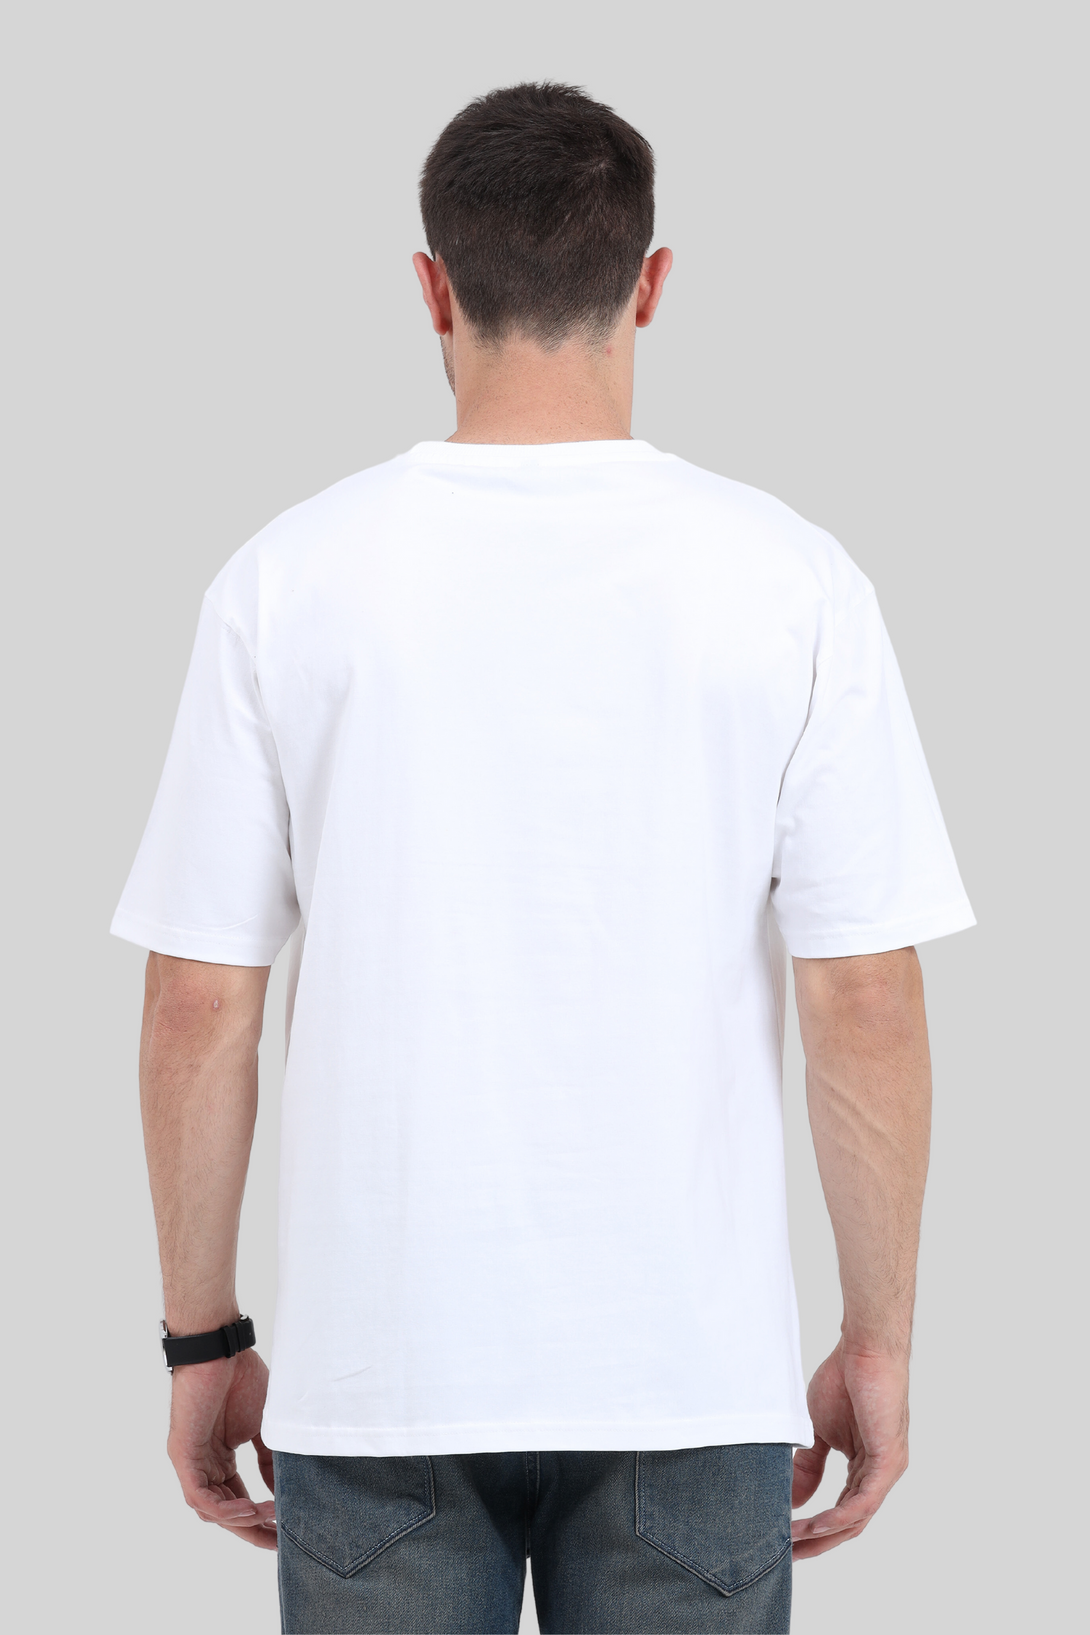 White Oversized T-Shirt For Men - WowWaves - 1